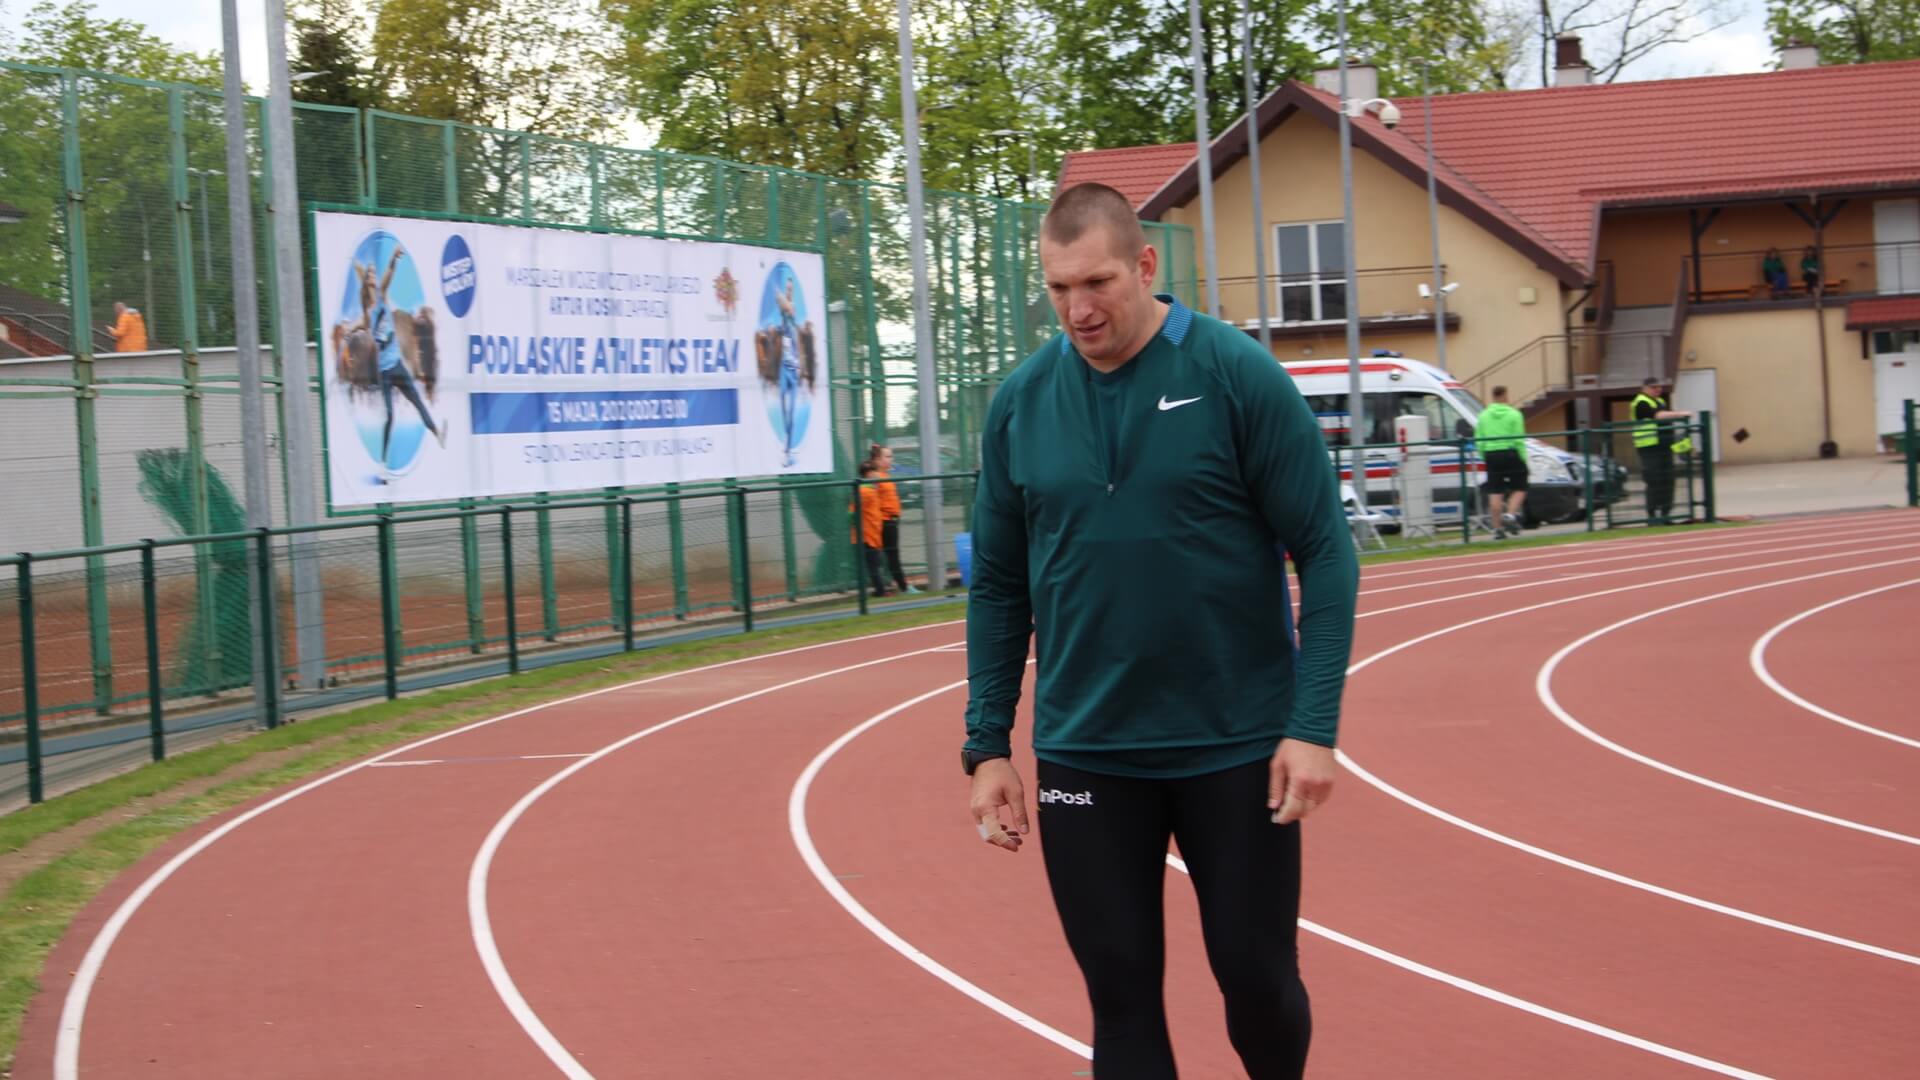 Podlaskie Athletics Team w Suwałkach, 15.05.2022, fot. Karol Prymaka